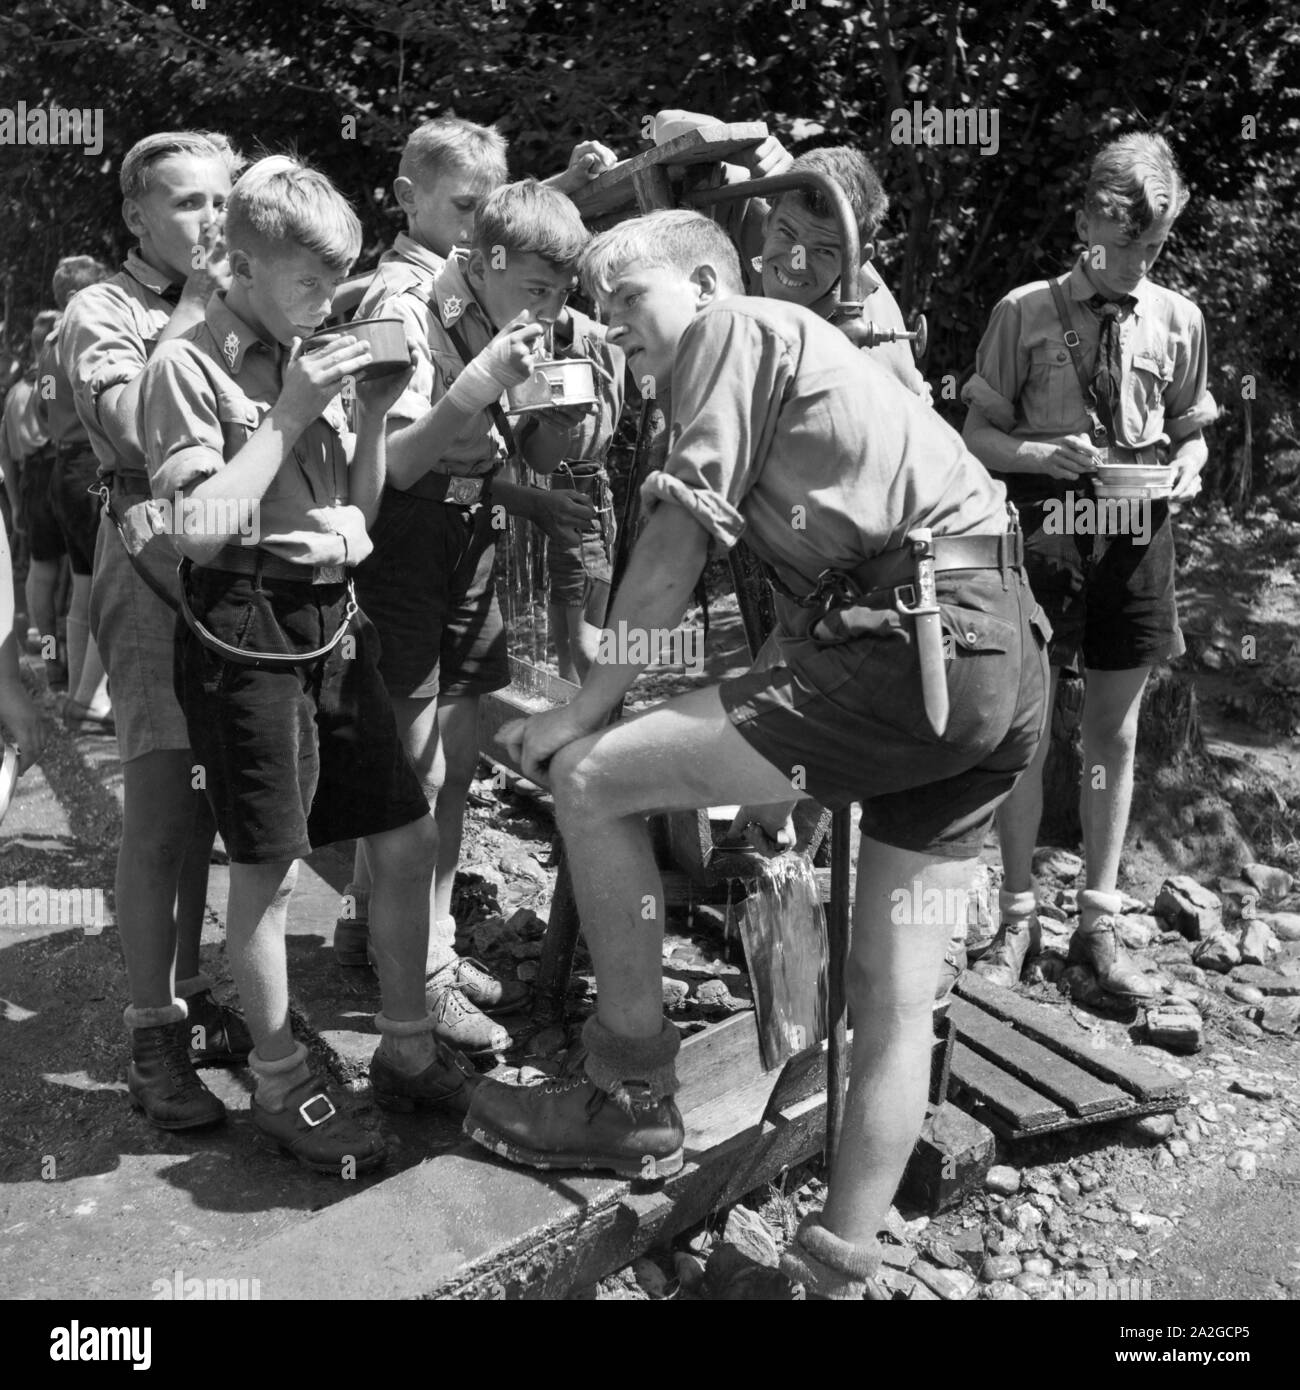 Hitlerjungen löschen ihren Durst un einem Brunnen in der Nähe von Spitz in Niederösterreich, Österreich 1930er Jahre. Hitler giovani di bere da un pozzo di Spitz, Austria Inferiore, Austria 1930s. Foto Stock